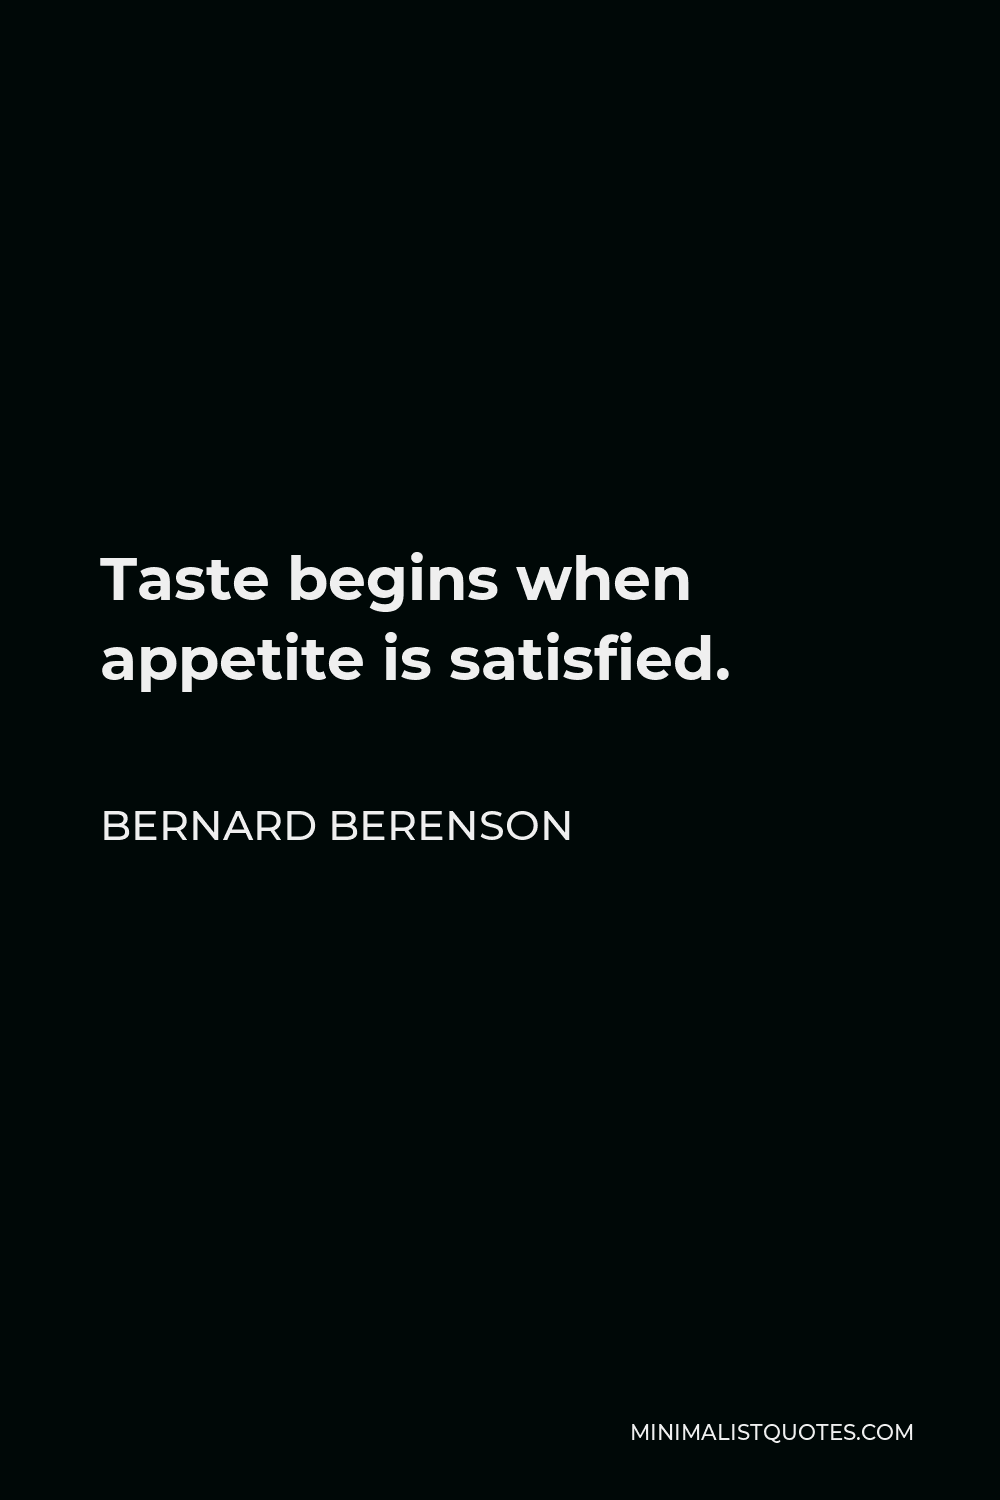 Bernard Berenson Quote - Taste begins when appetite is satisfied.